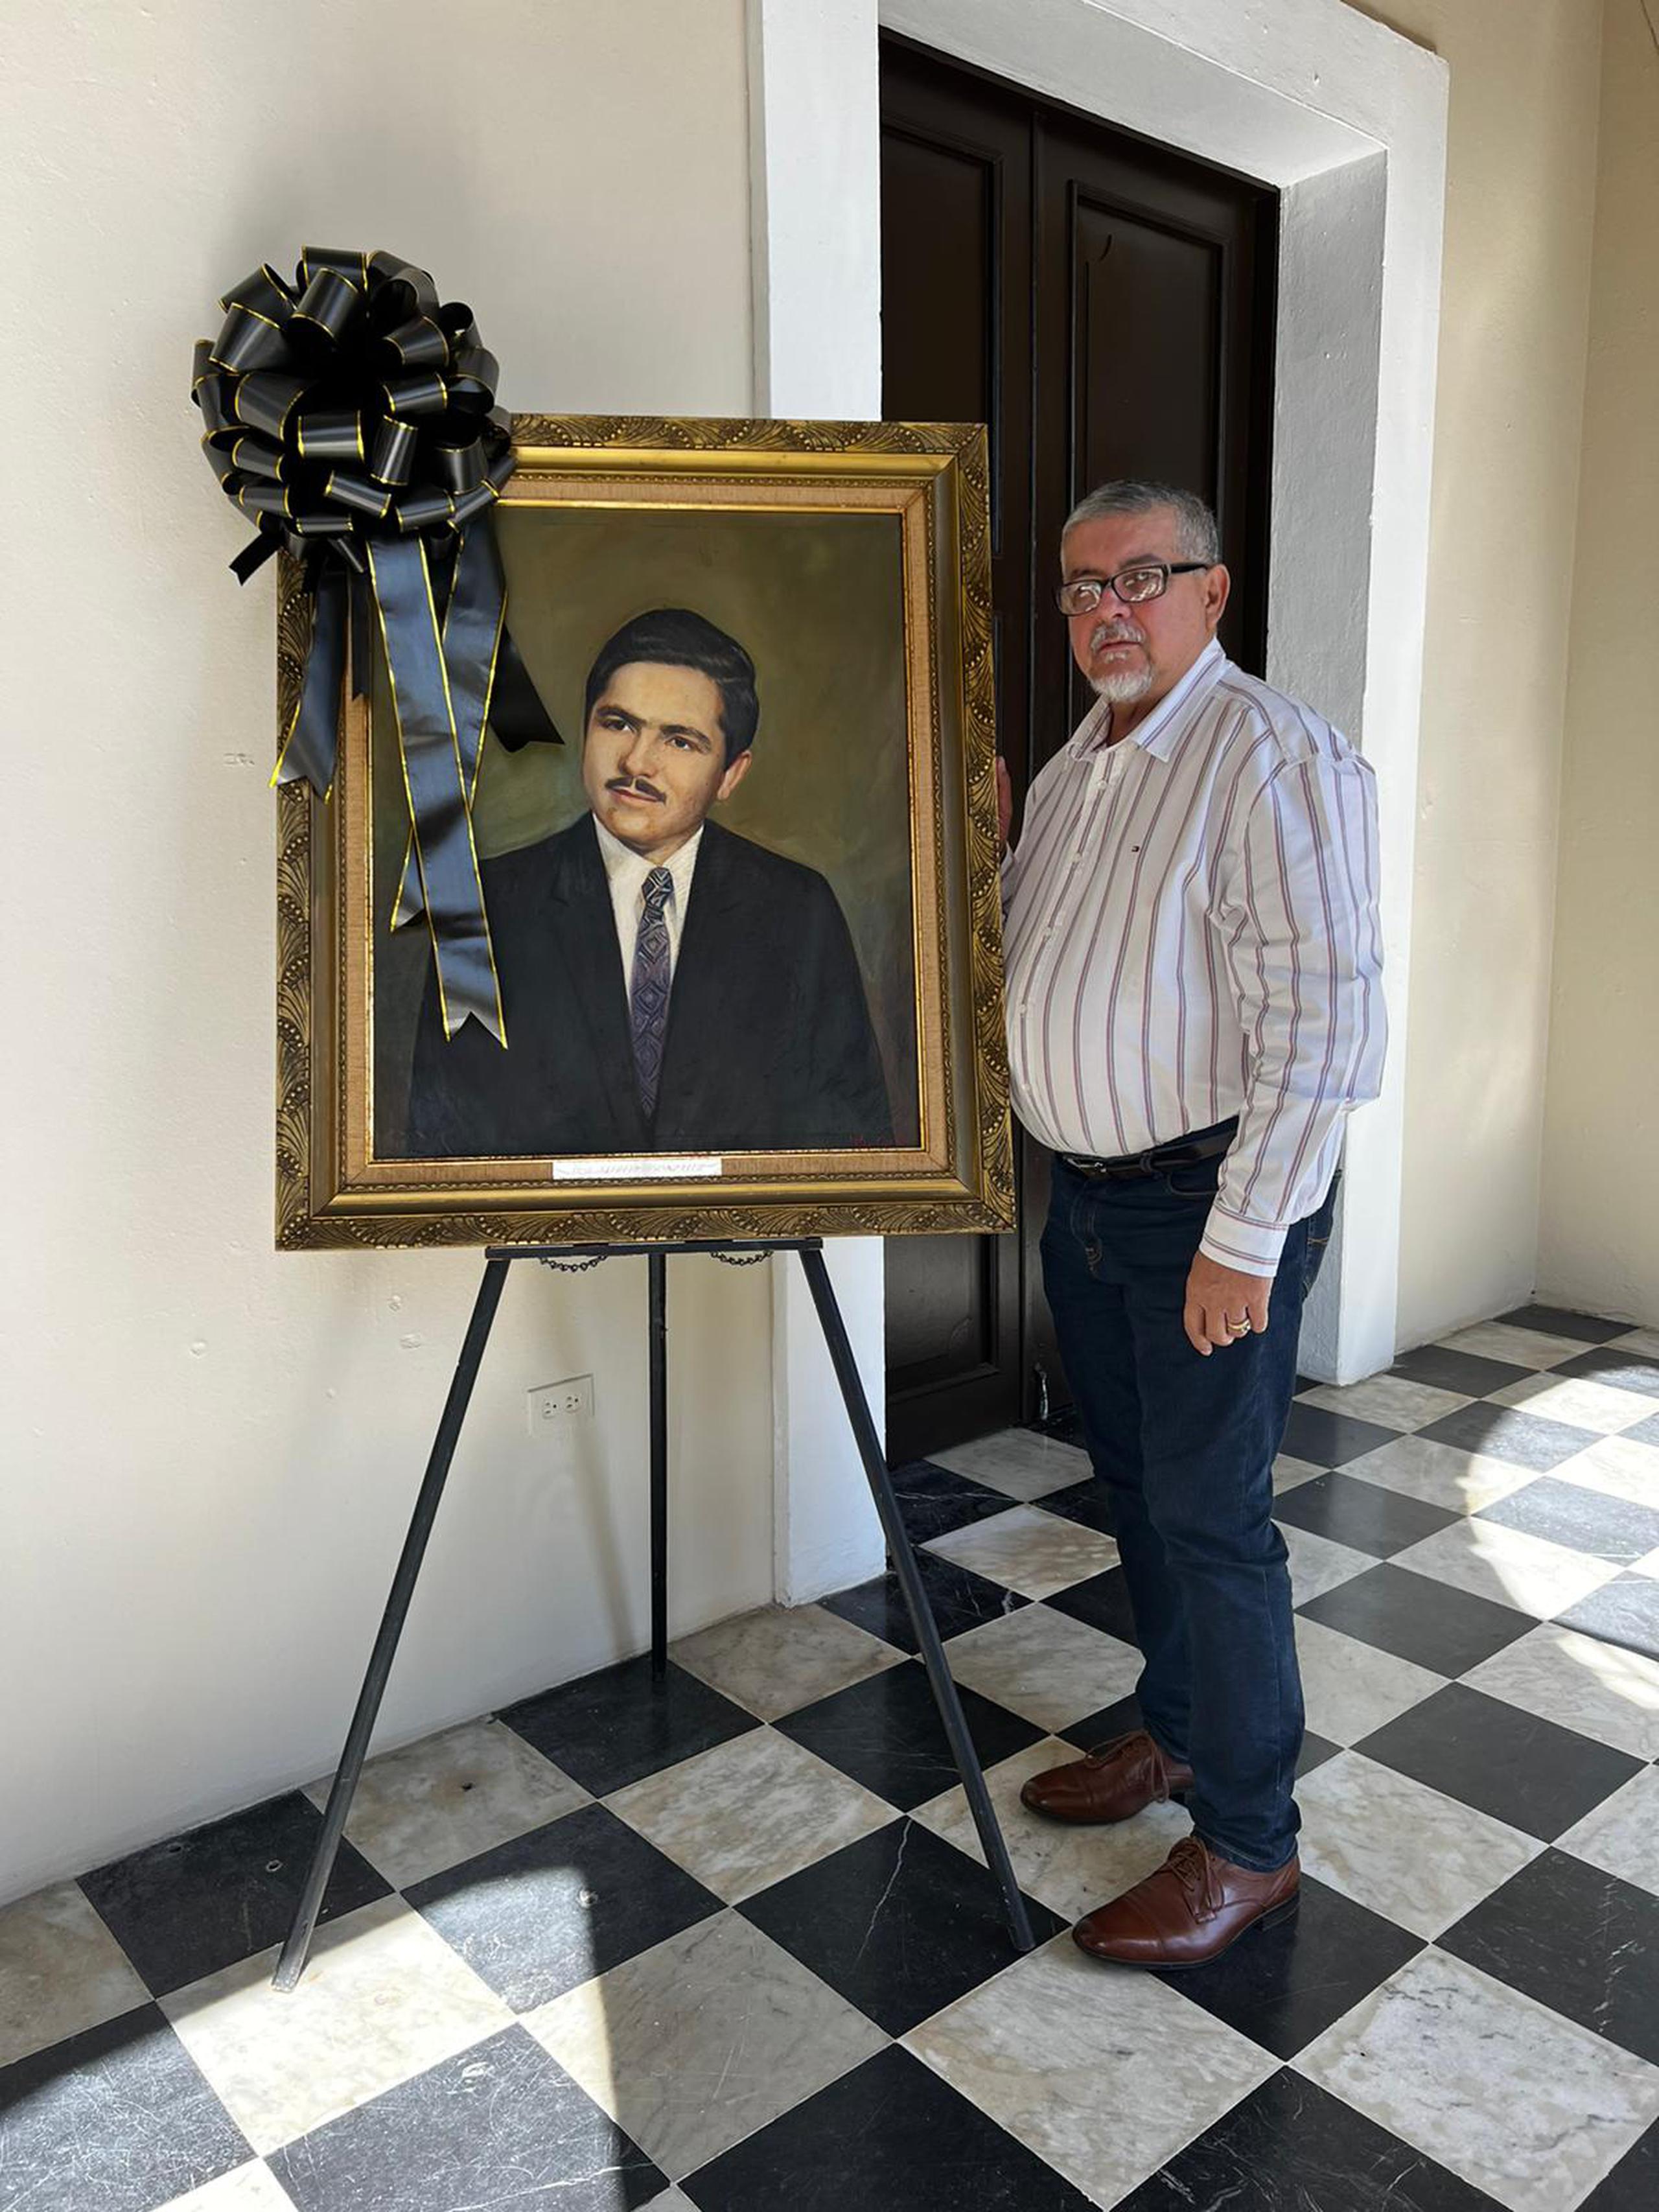 El alcalde de Arecibo, Carlos “Tito” Ramírez Irizarry justo al lado de un cuadro del exalcalde Alfredo González Rivera.